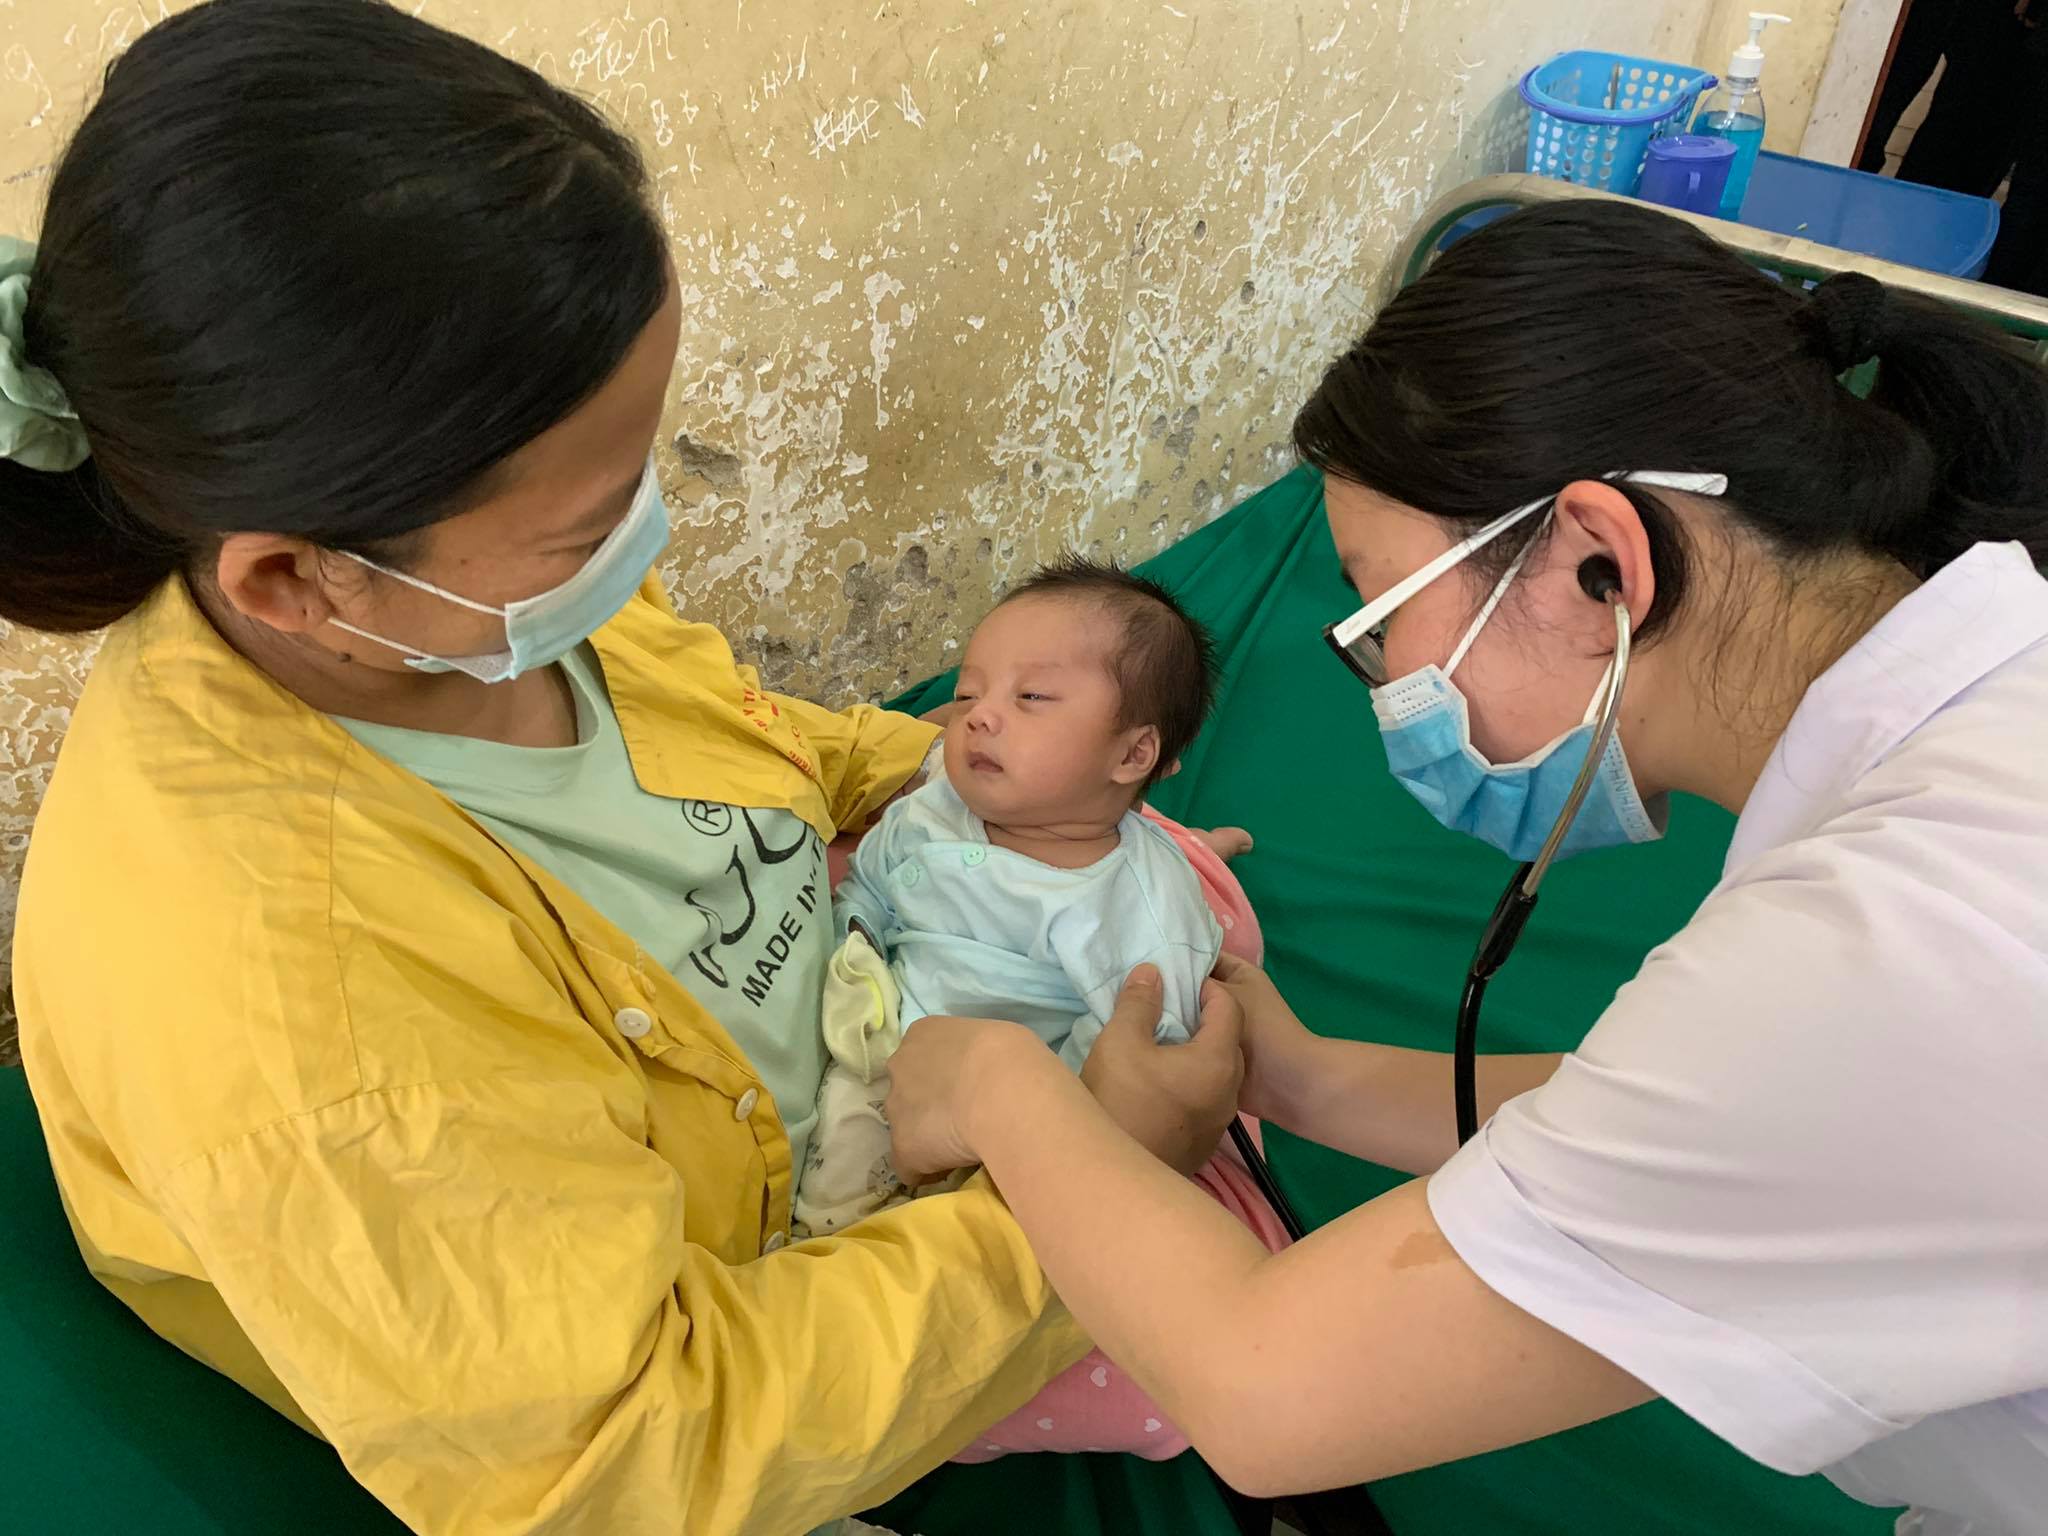  Bác sĩ trẻ của Dự án 585 công tác tại Trung tâm y tế huyện Tương Dương, tỉnh Nghệ An. Ảnh: VGP/Hiền Minh